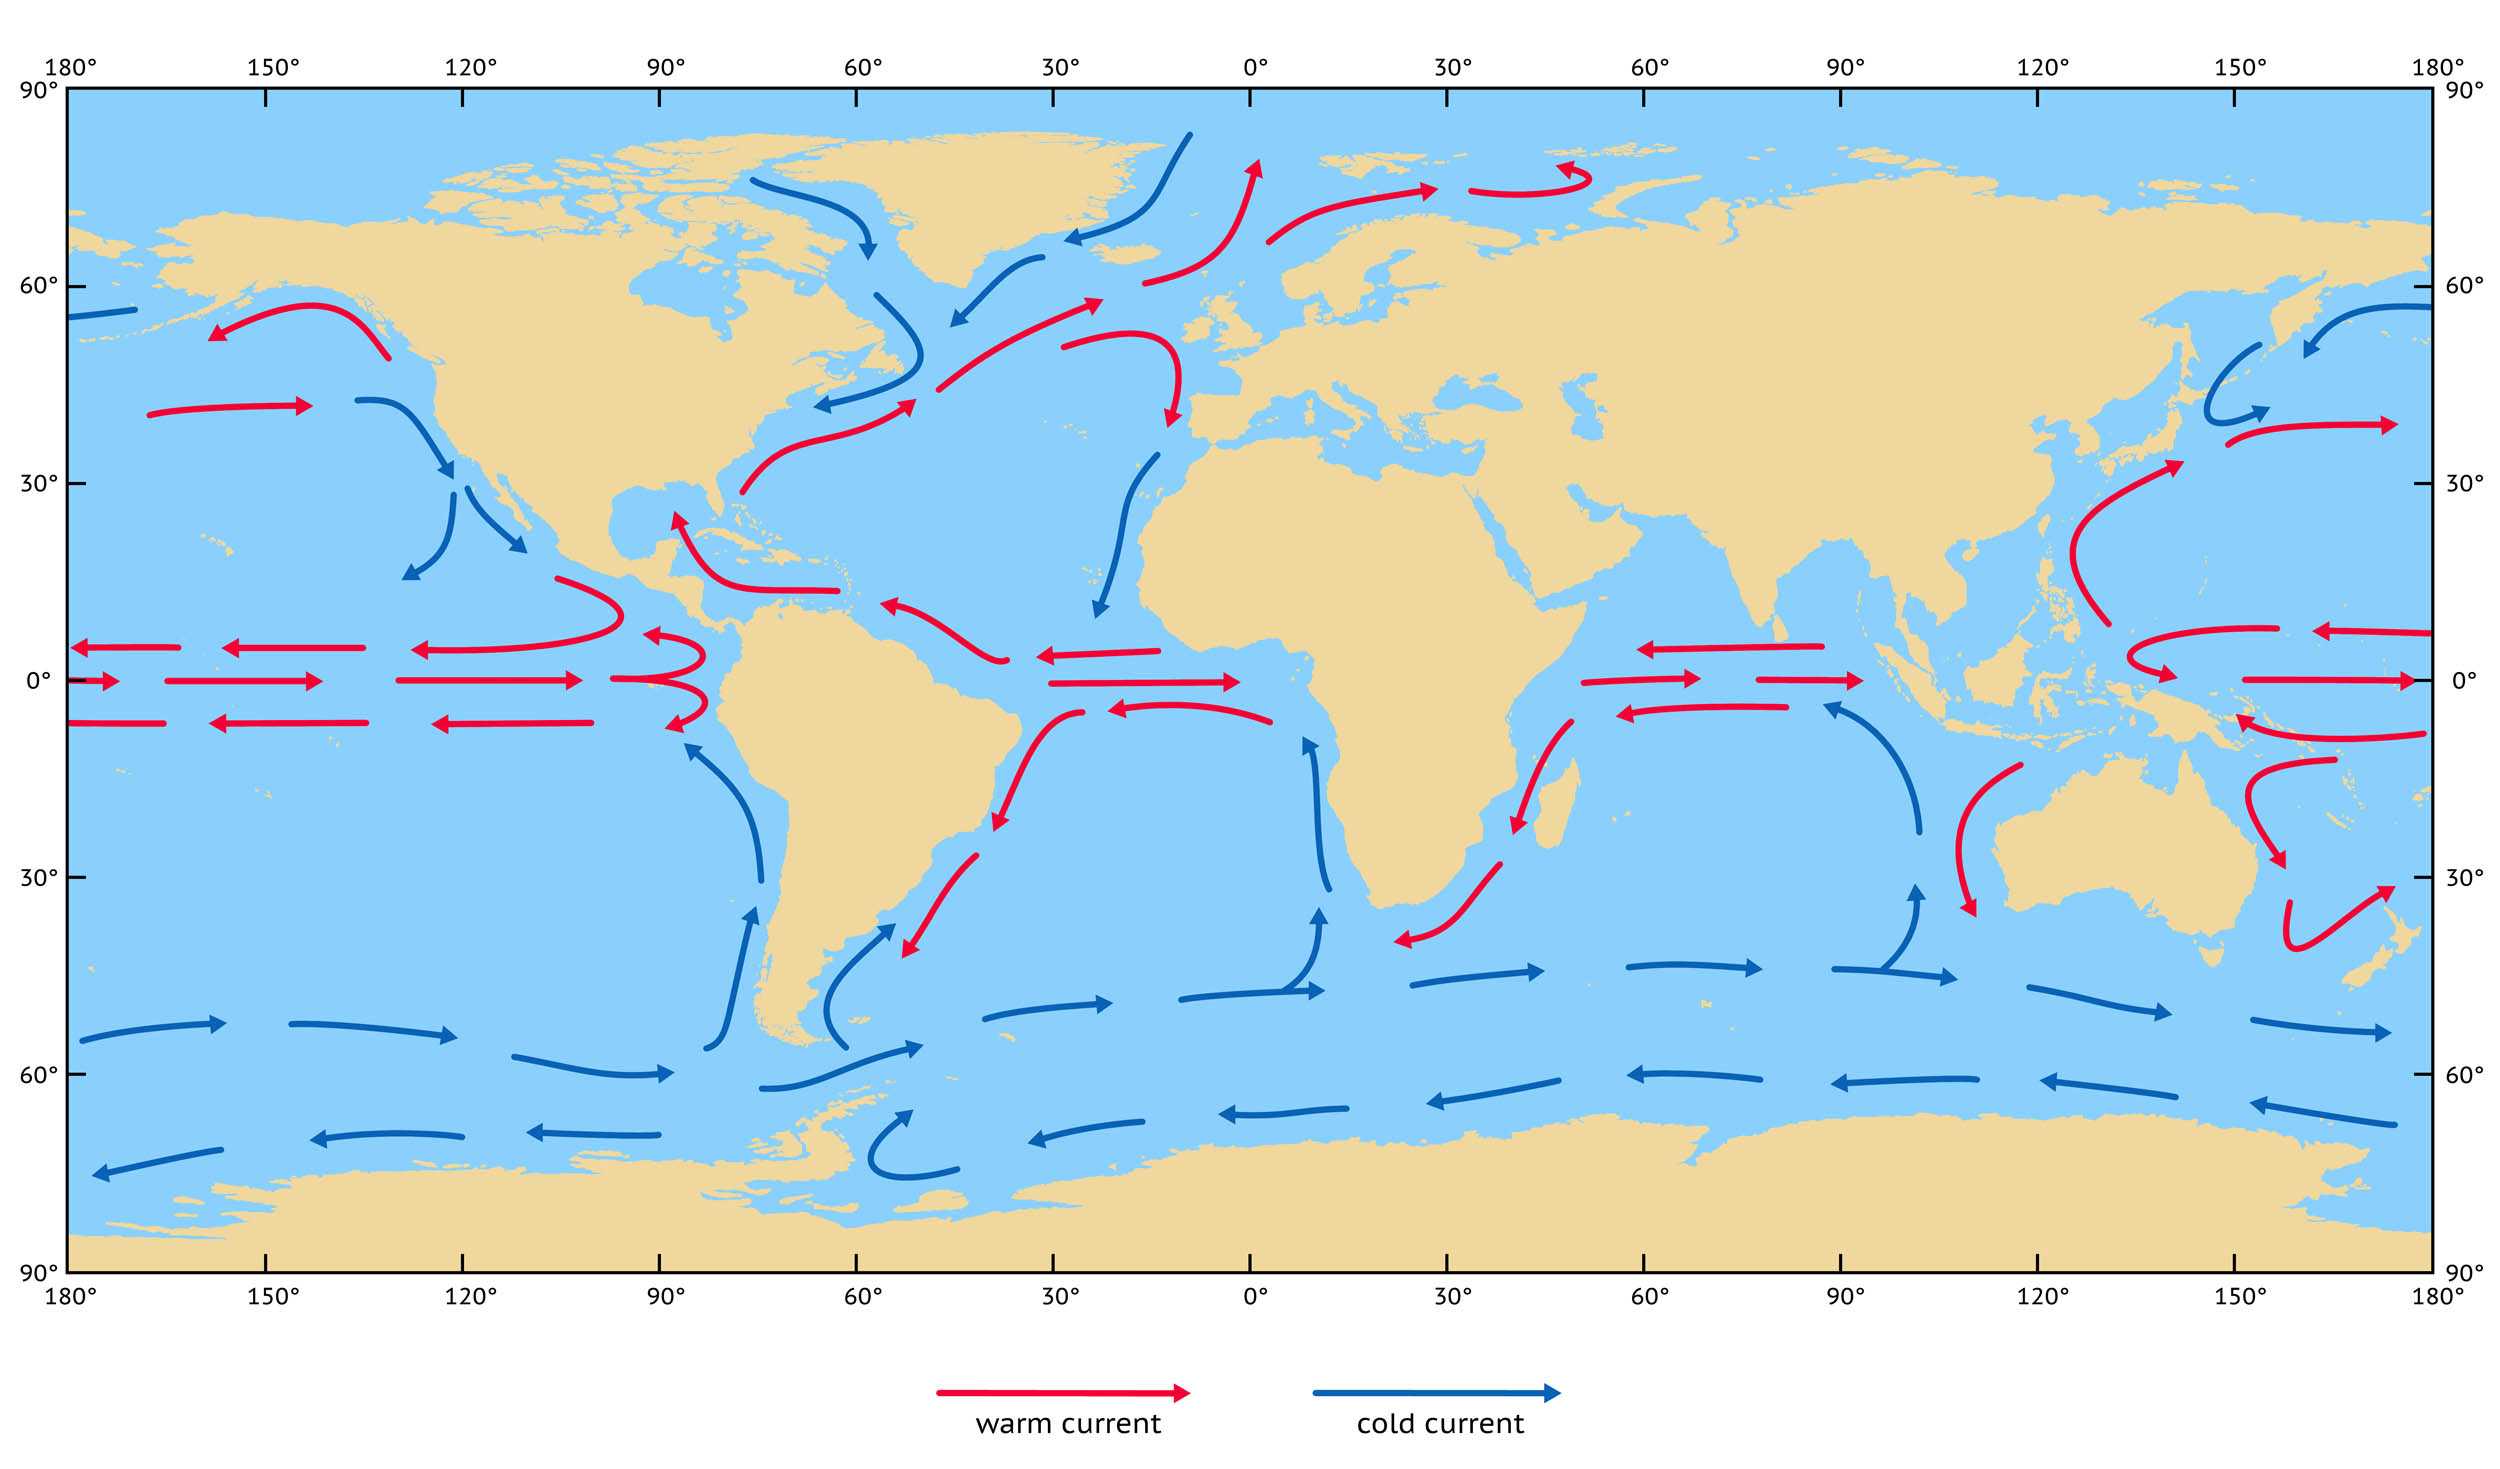 Что такое мировой океан: его части, свойства океанических вод